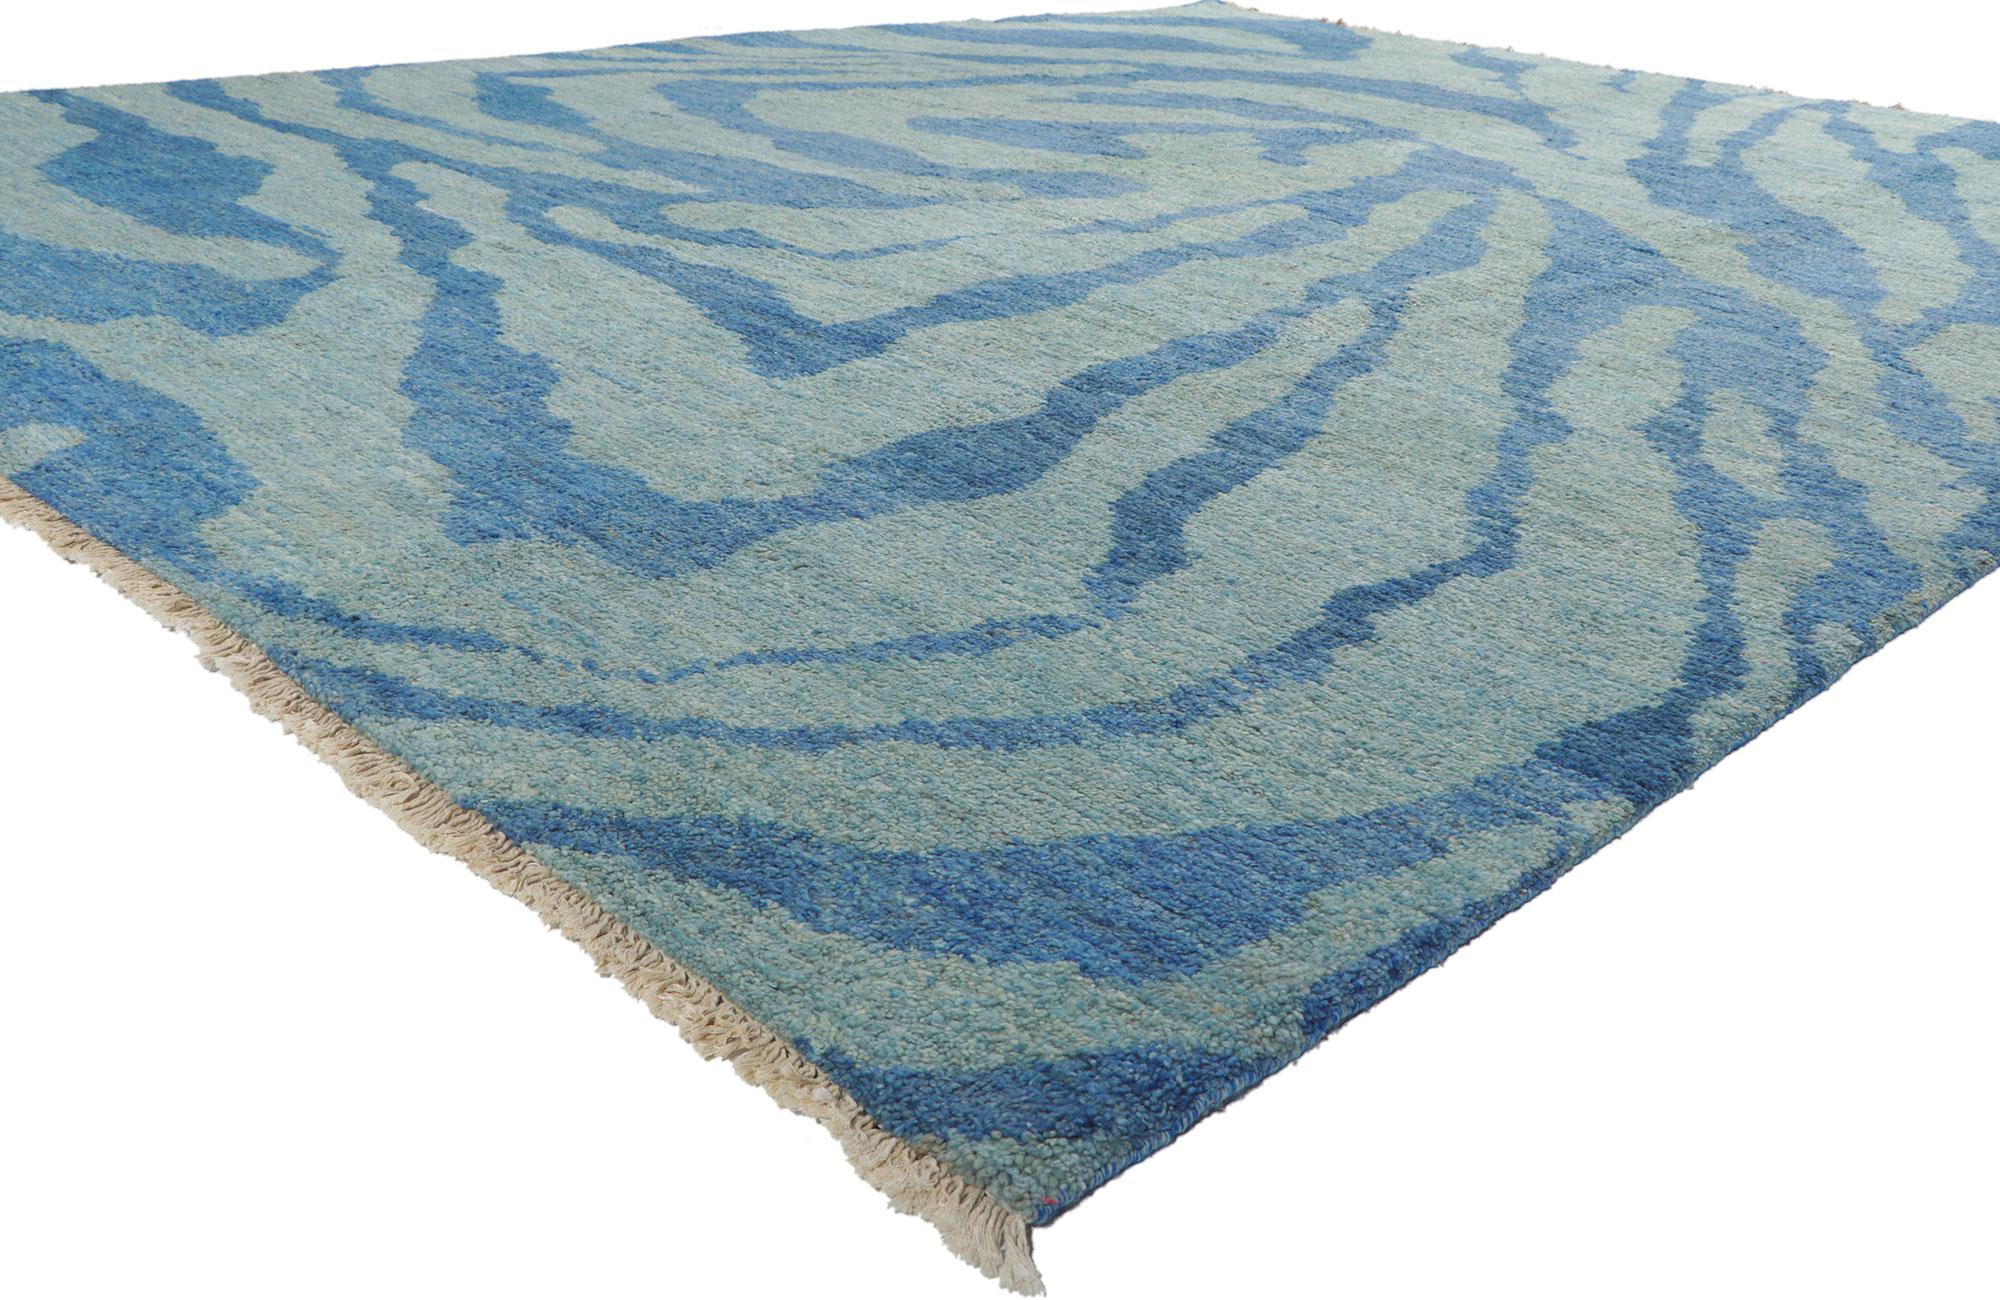 80382 New Abstrakter Marokkanischer Teppich, 10'06 x 13'04.
Dieser marokkanische Teppich ist ein Meer von amorphen Wirbeln mit unglaublichen Details und Texturen und ist eine fesselnde Vision von gewebter Schönheit. Das abstrakte Design und die